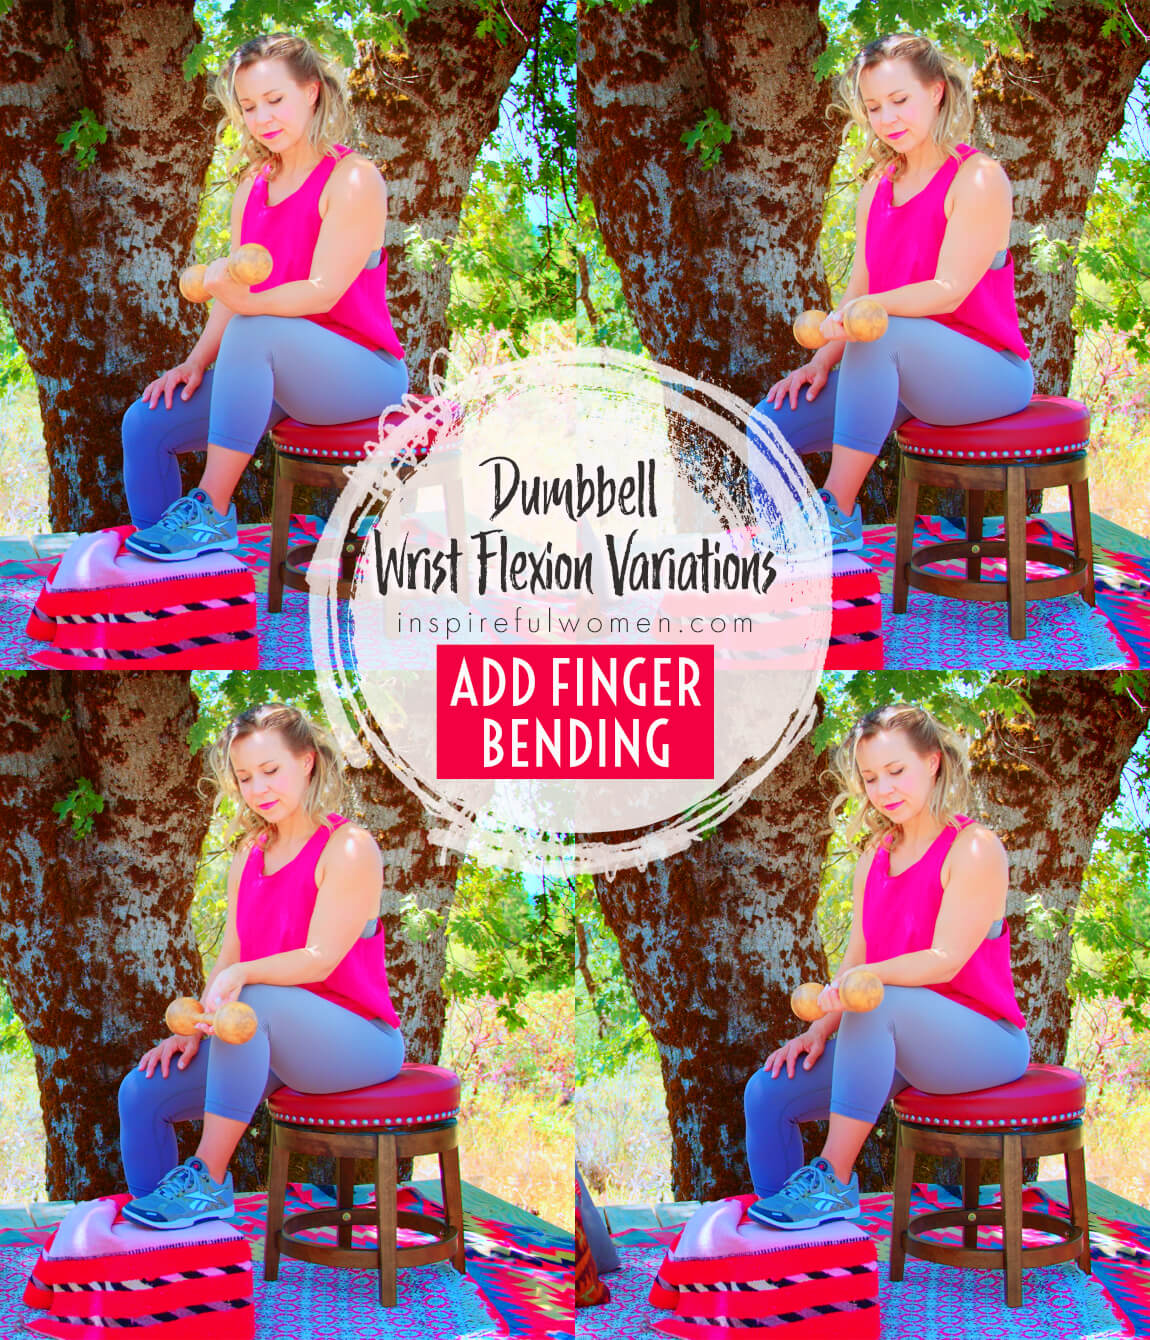 add-fingers-bending-dumbbell-wrist-flexion-strengthening-forearm-exercise-variation